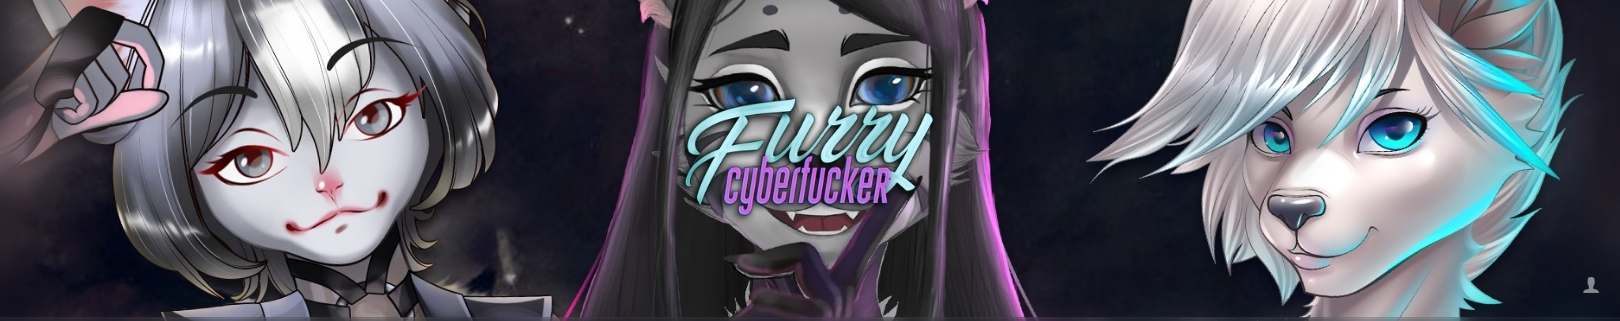 Furry Cyberfucker 1 & 2 poster